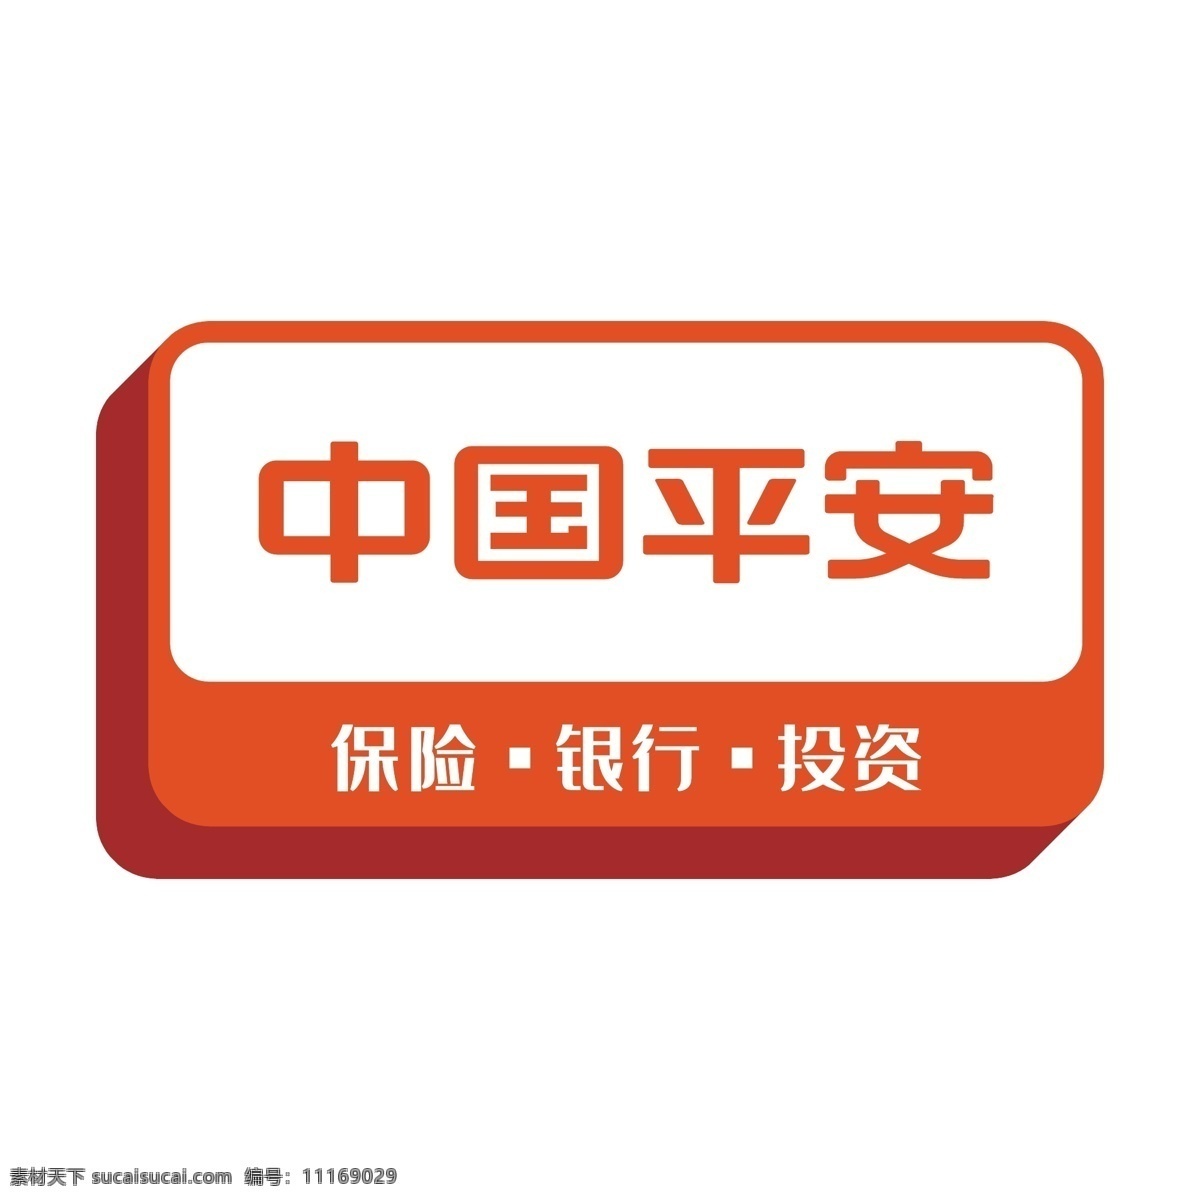 中国平安 立体 logo 图标 橙色立体 保险 银行 投资 图标设计 手机应用 应用软件 软件